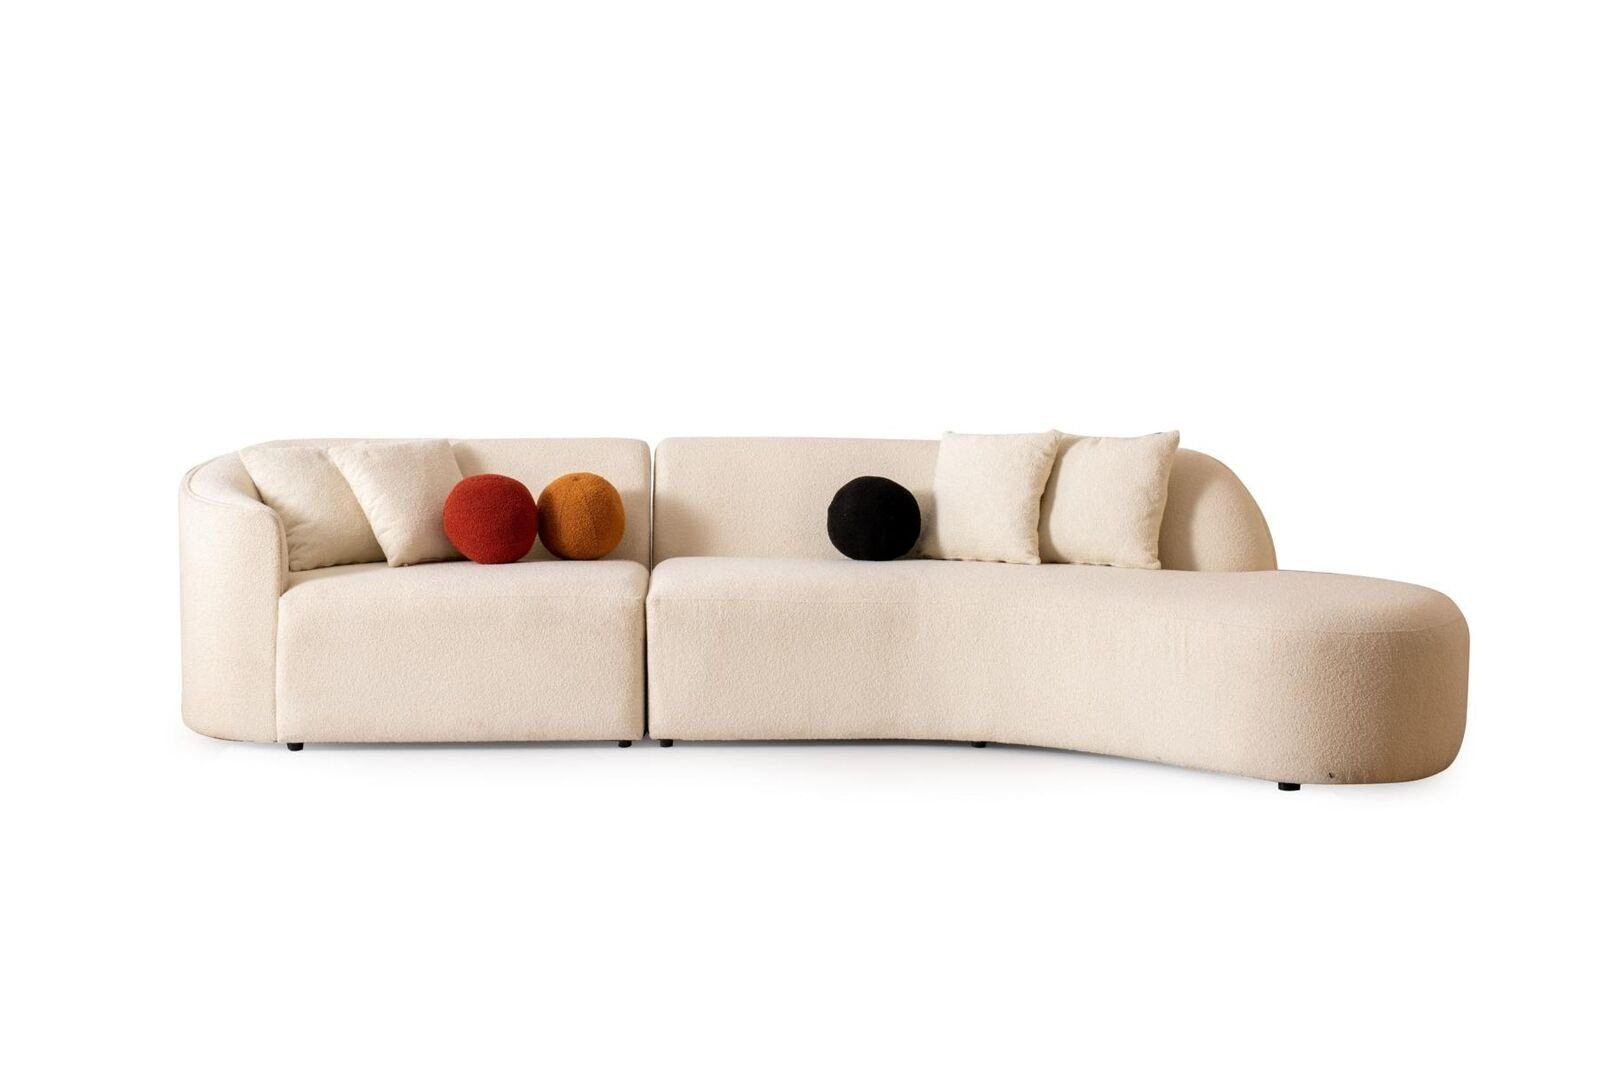 JVmoebel Ecksofa Eckgarnitur, in Möbel Teile, Weiß 1 Sofa wohnzimmer Ecksofa Europa Made Modern L-form Couch